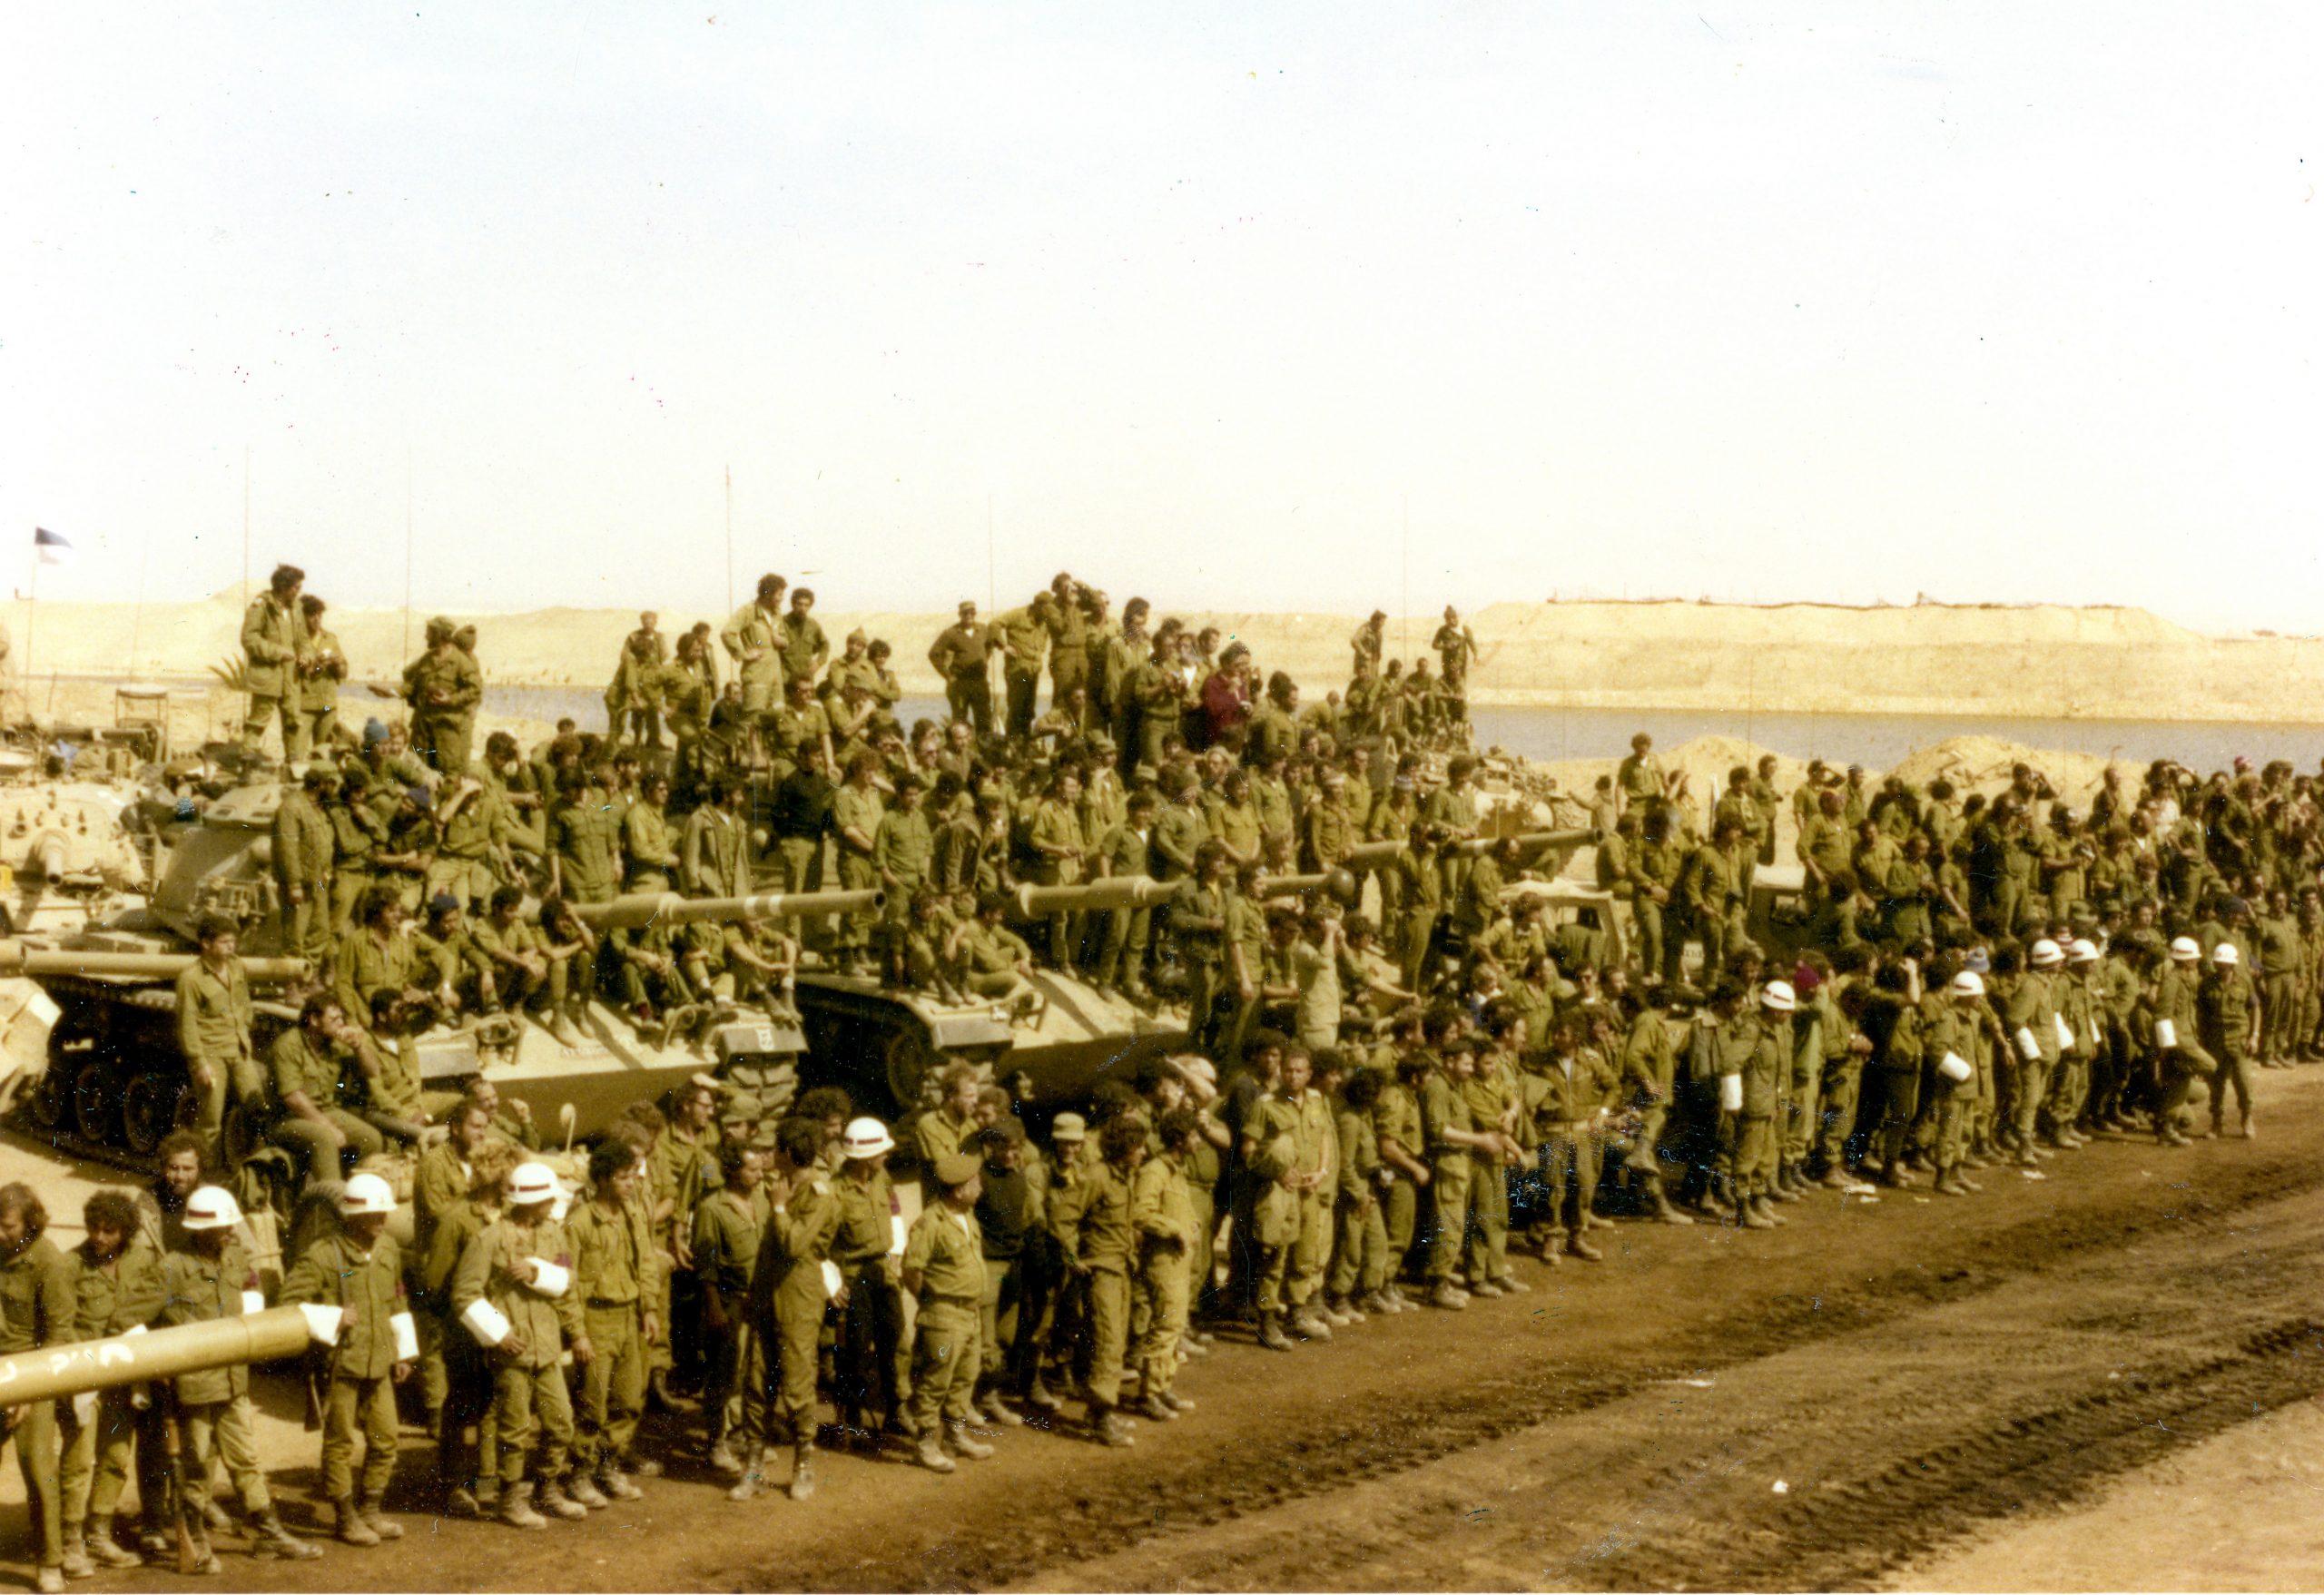 טנקים מסוג מגח 6א (M60A1) של חטיבת המילואים 600 וגדוד הסיור 87, וטנקים מסוג מגח 3 (M48A3) של חטיבה 421, וצוותיהם,  במסדר הסיום של "יציאת מצריים", בסמוך לגשר היבשתי. (יונתן אדרת – חטיבה 421)